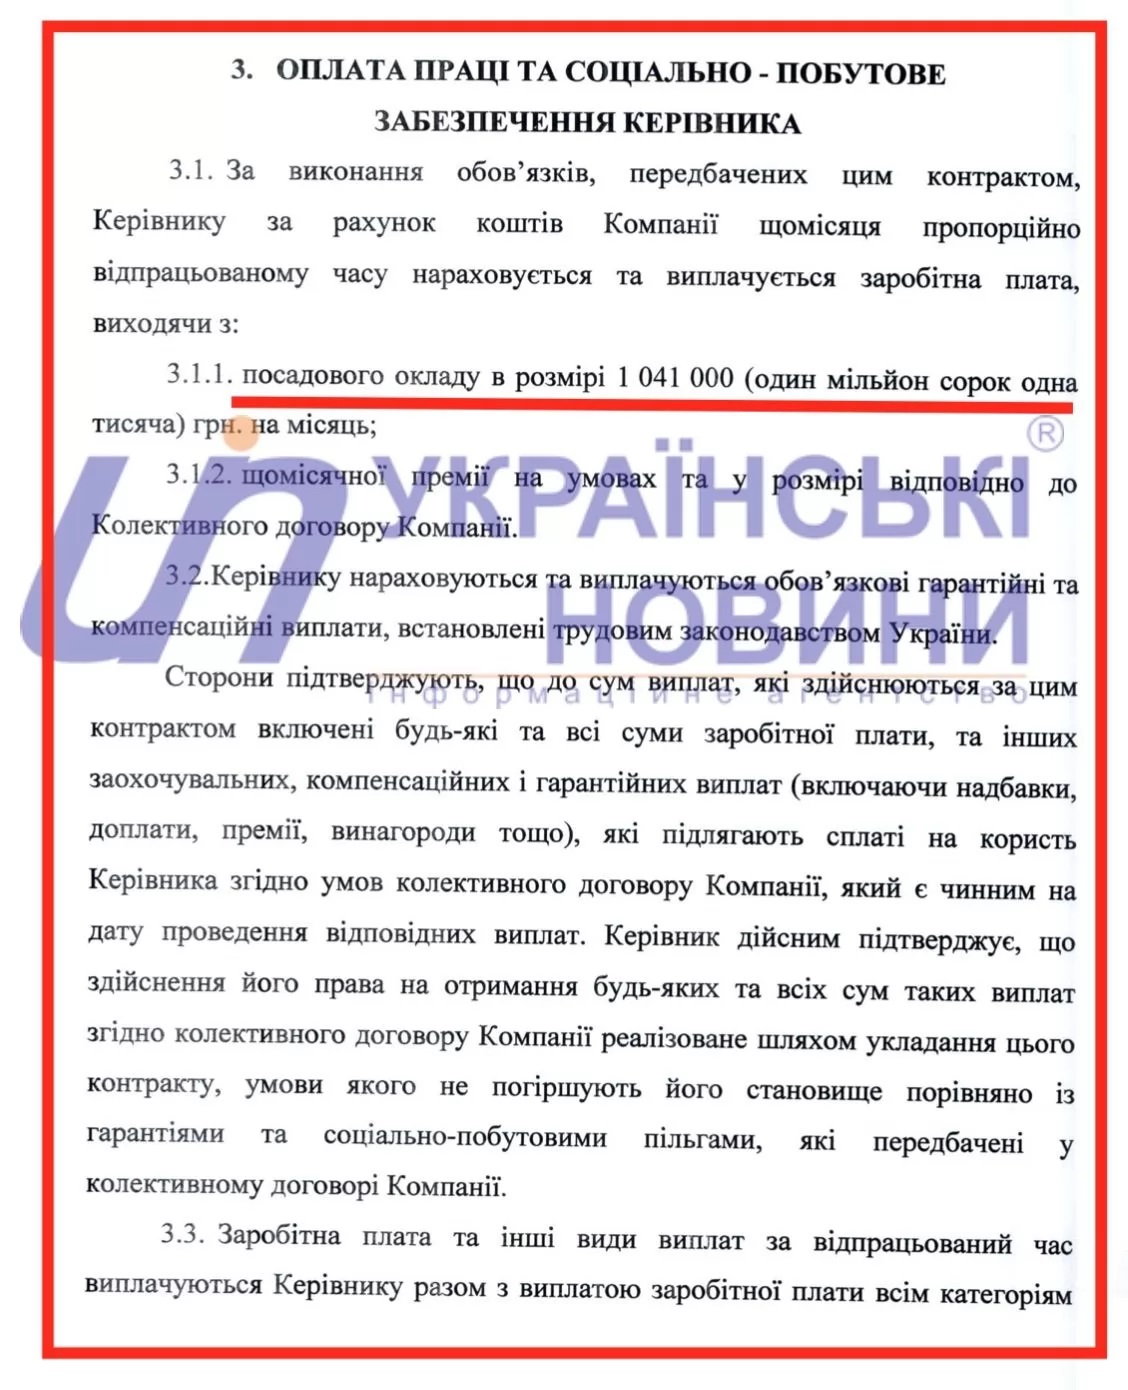 Контракт Коболева с Нафтогазом. Скан: Украинские Новости